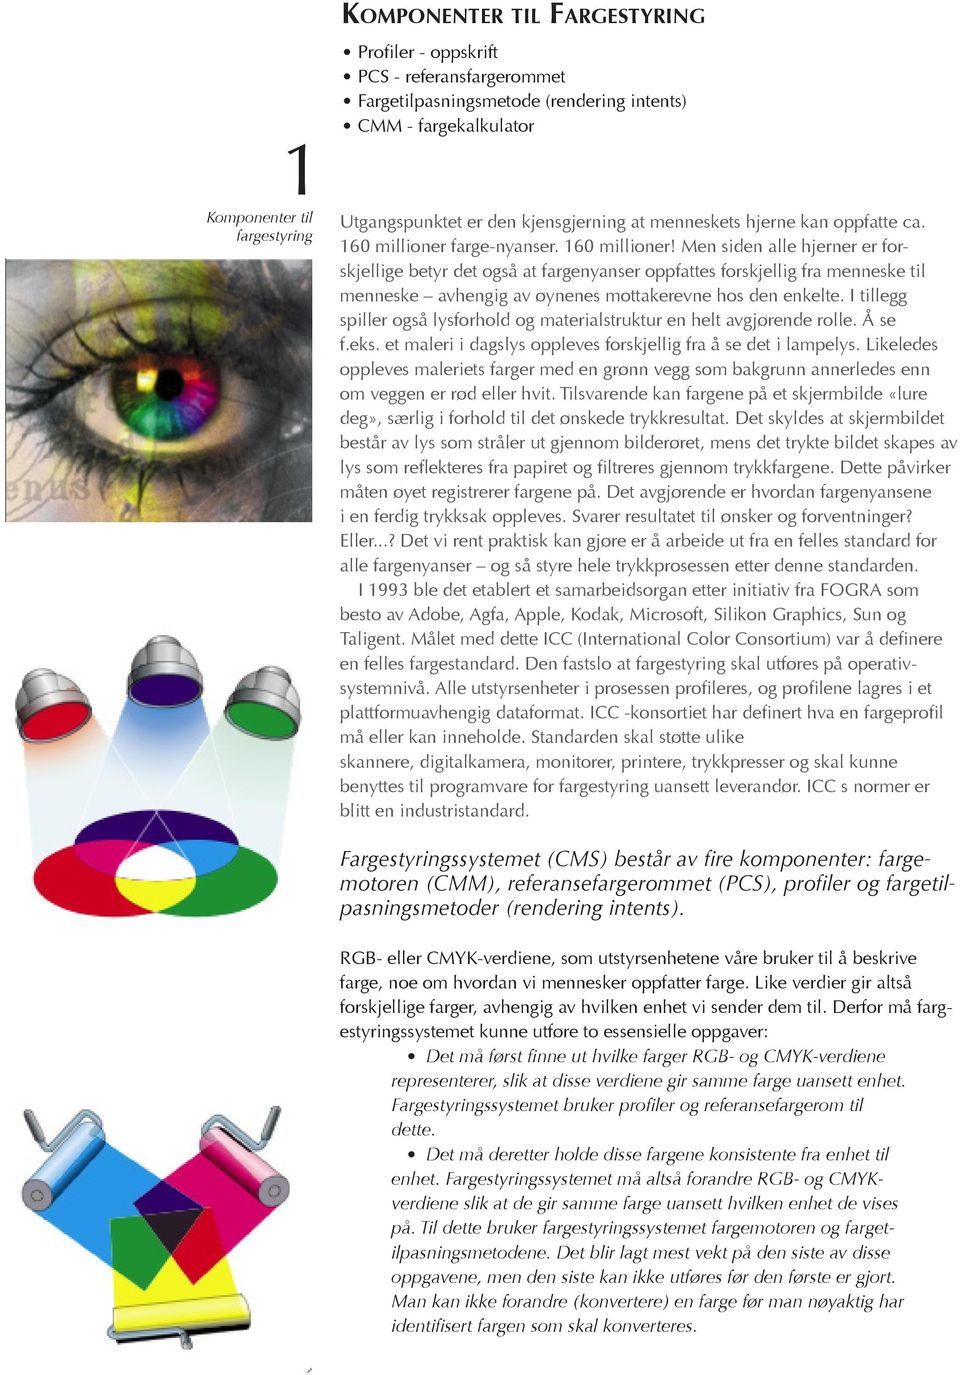 Men siden alle hjerner er forskjellige betyr det også at fargenyanser oppfattes forskjellig fra menneske til menneske avhengig av øynenes mottakerevne hos den enkelte.